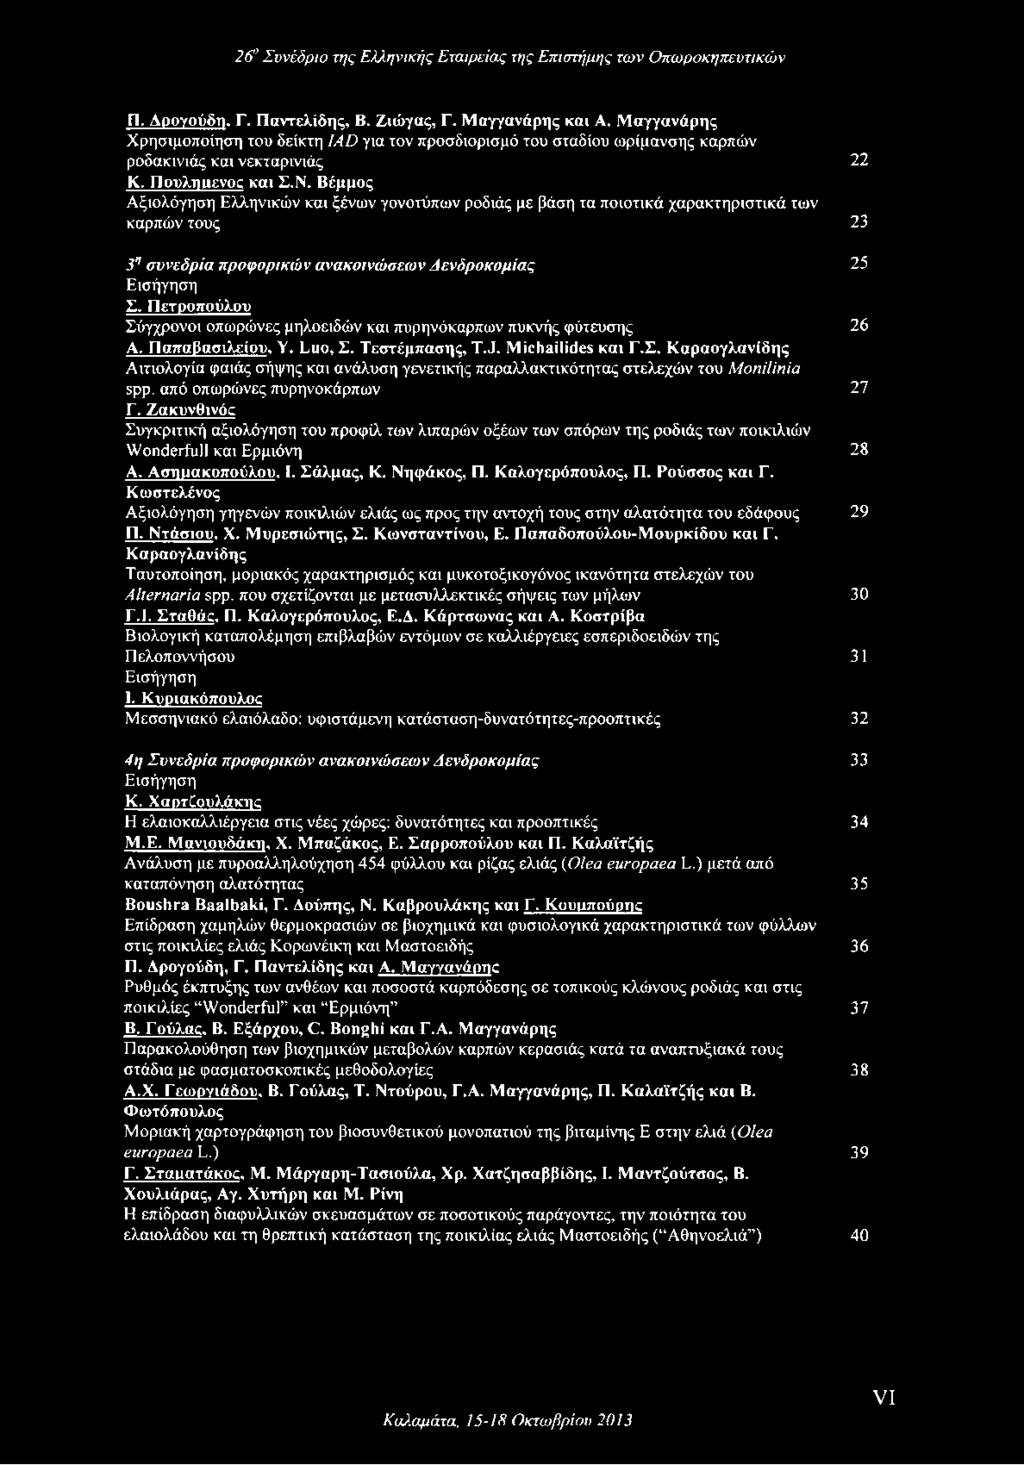 Πετροπούλου Σύγχρονοι οπωρώνες μηλοειδών και πυρηνόκαρπων πυκνής φύτευσης 26 Α. ΓΊαπαβασιλείου, Υ. Luo, Σ. Τεστέμπασης, T.J. Michailides και Γ.Σ. Καραογλανίδης Αιτιολογία φαιάς σήψης και ανάλυση γενετικής παραλλακτικότητας στελεχών του Monilinia spp.